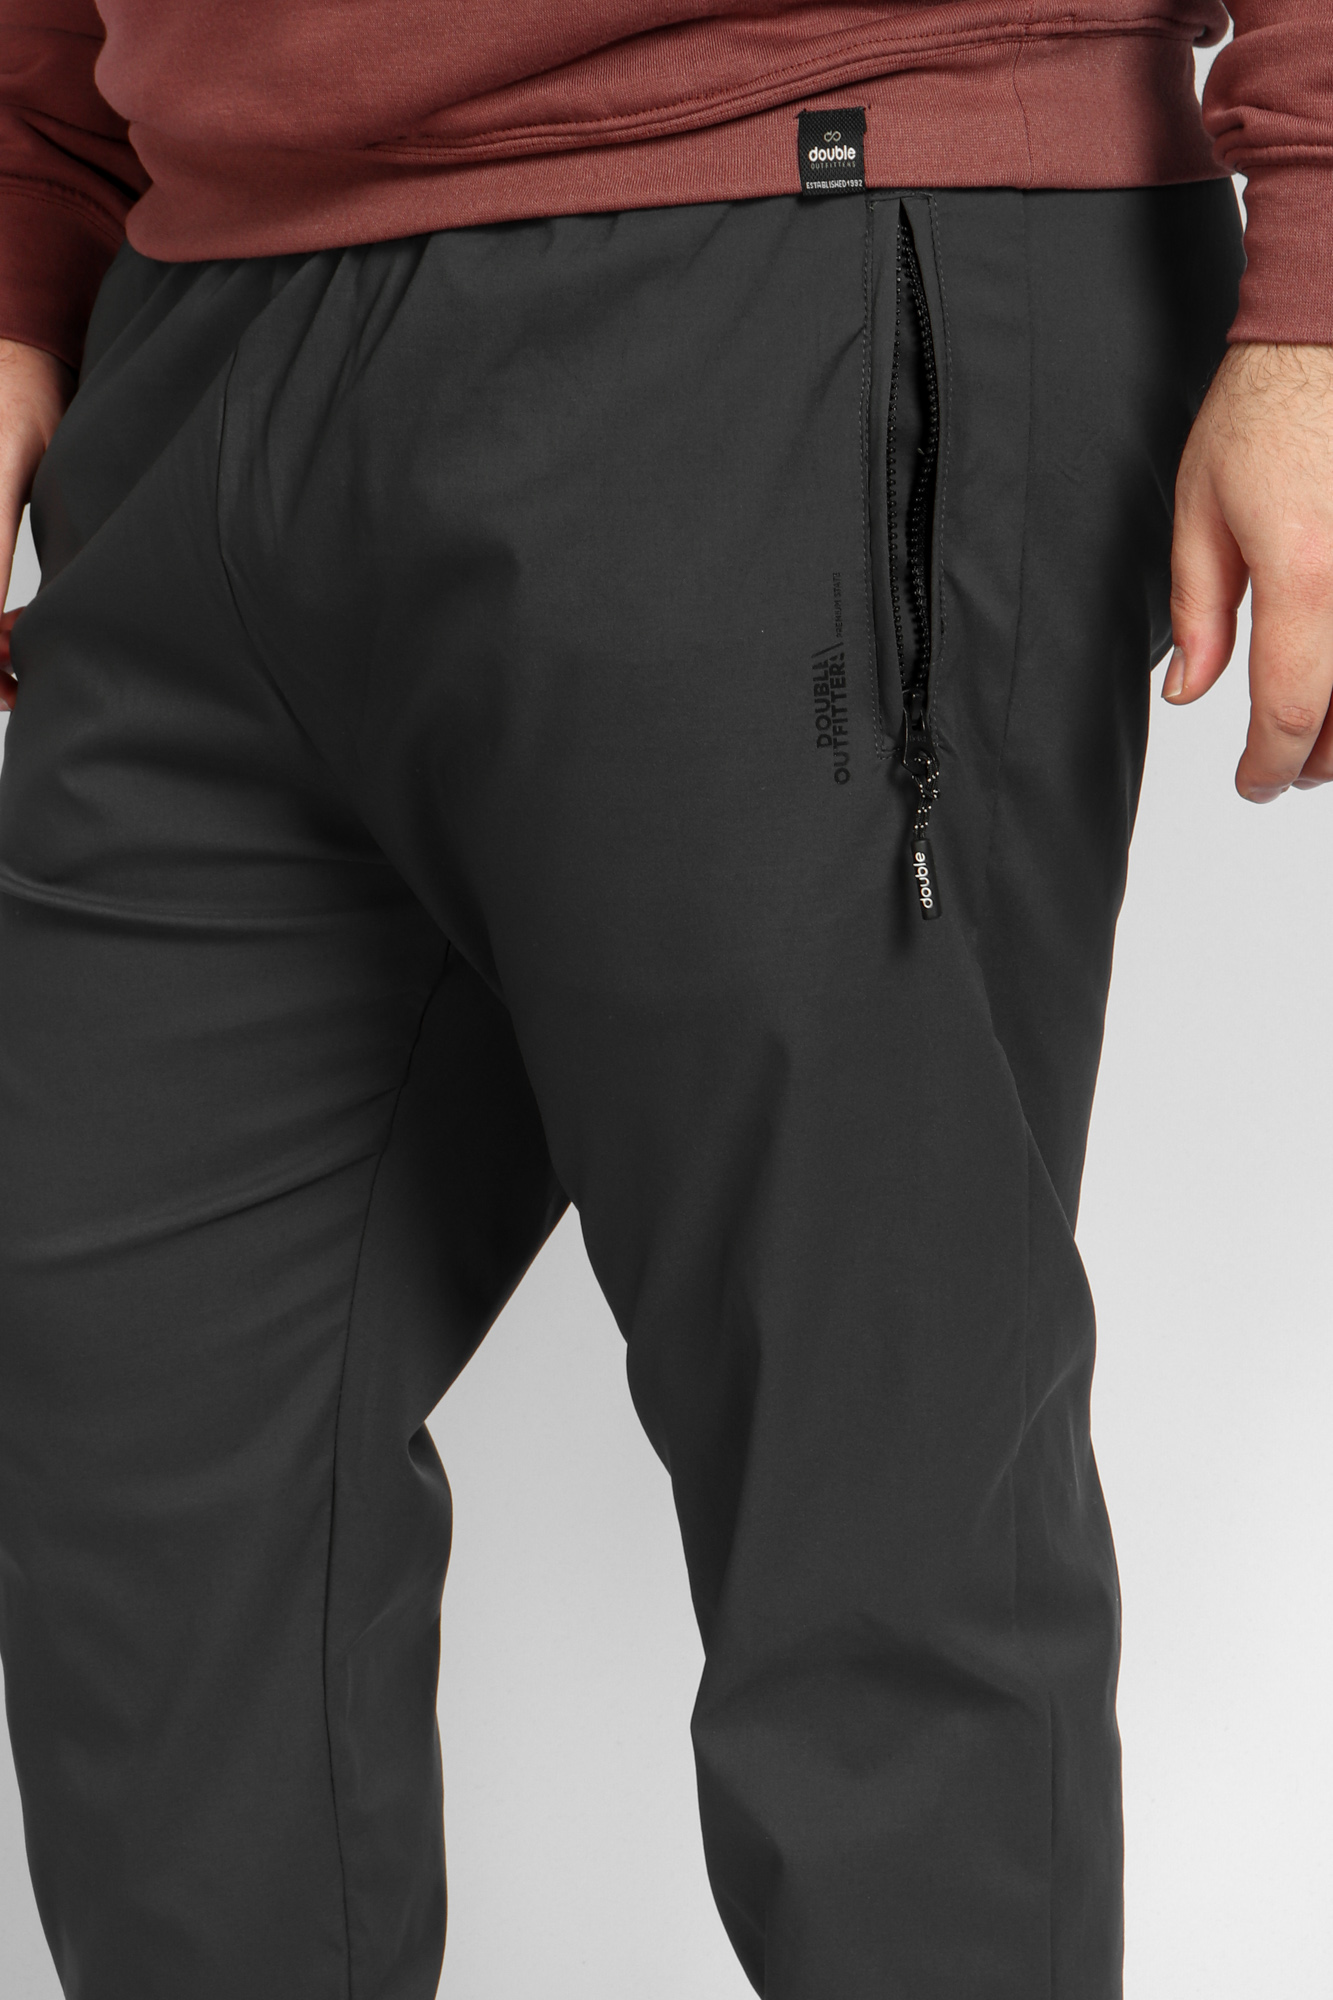 Παντελόνι Φόρμας Ανδρικό Με Λάστιχο Plus Size - Γκρι